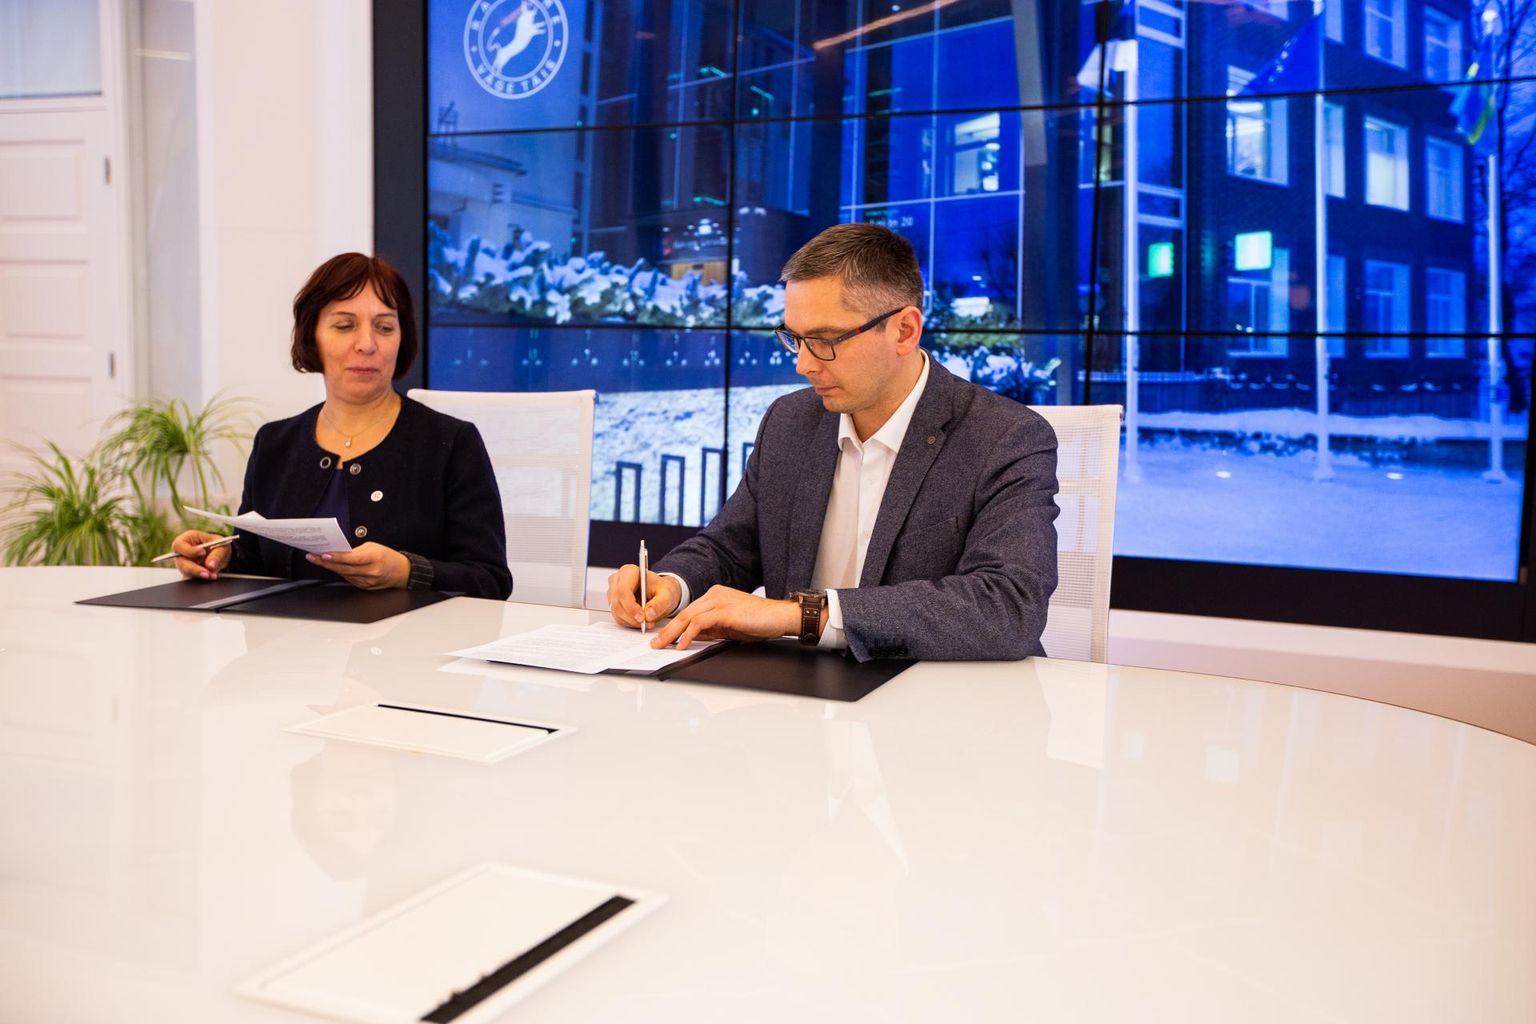 Haridus- ja teadusminister Mailis Reps ning Rakvere linnapea Marko Torm allkirjastasid lepingu riigigümnaasiumi rajamiseks Rakveresse.